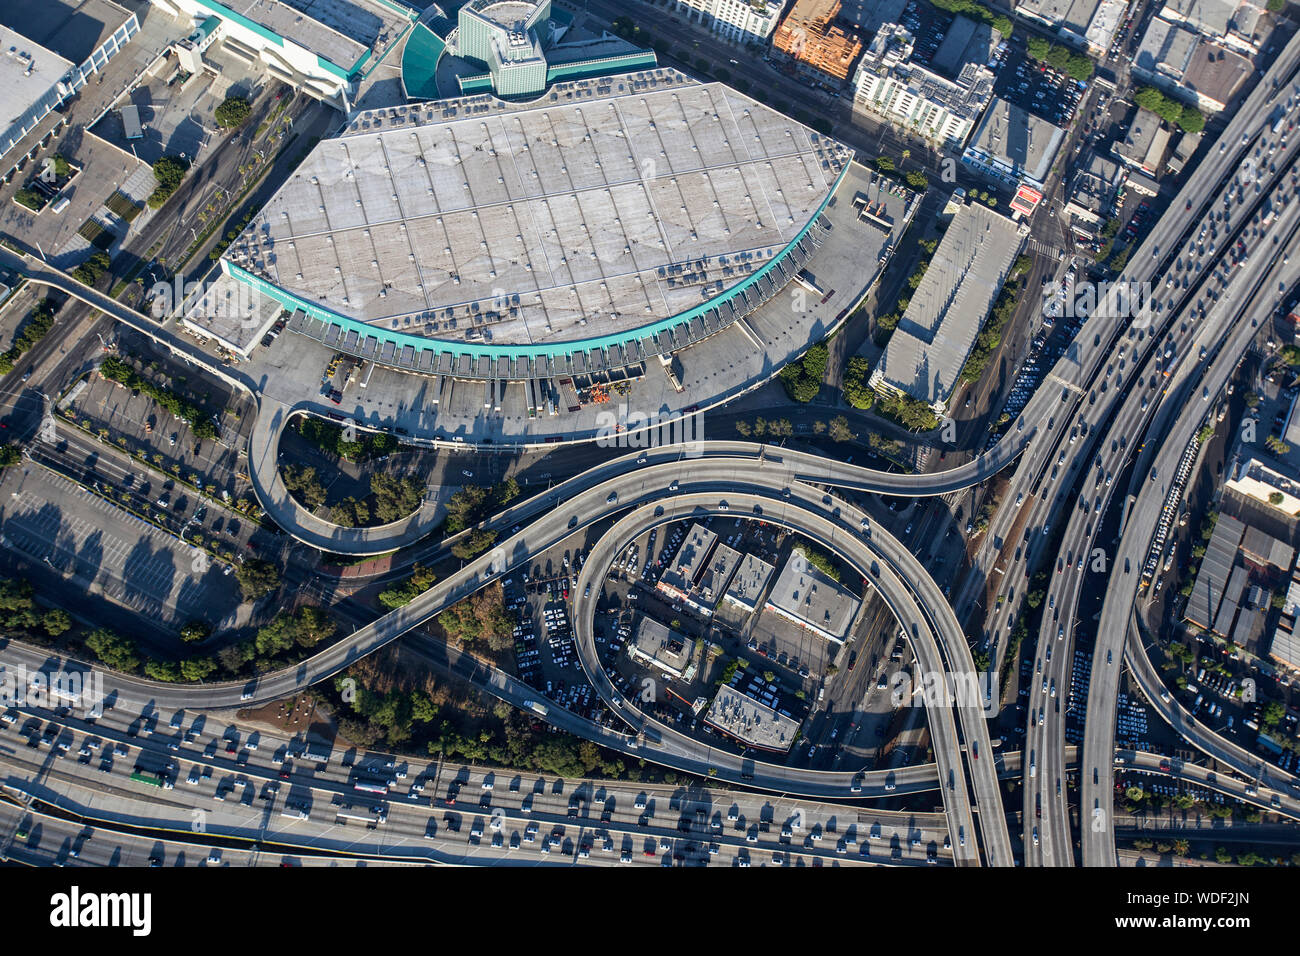 Los Angeles, California, USA - Agosto 7, 2017: Vista aérea de la Convention Center muelles de carga y autopistas ocupado en el centro de Los Angeles. Foto de stock